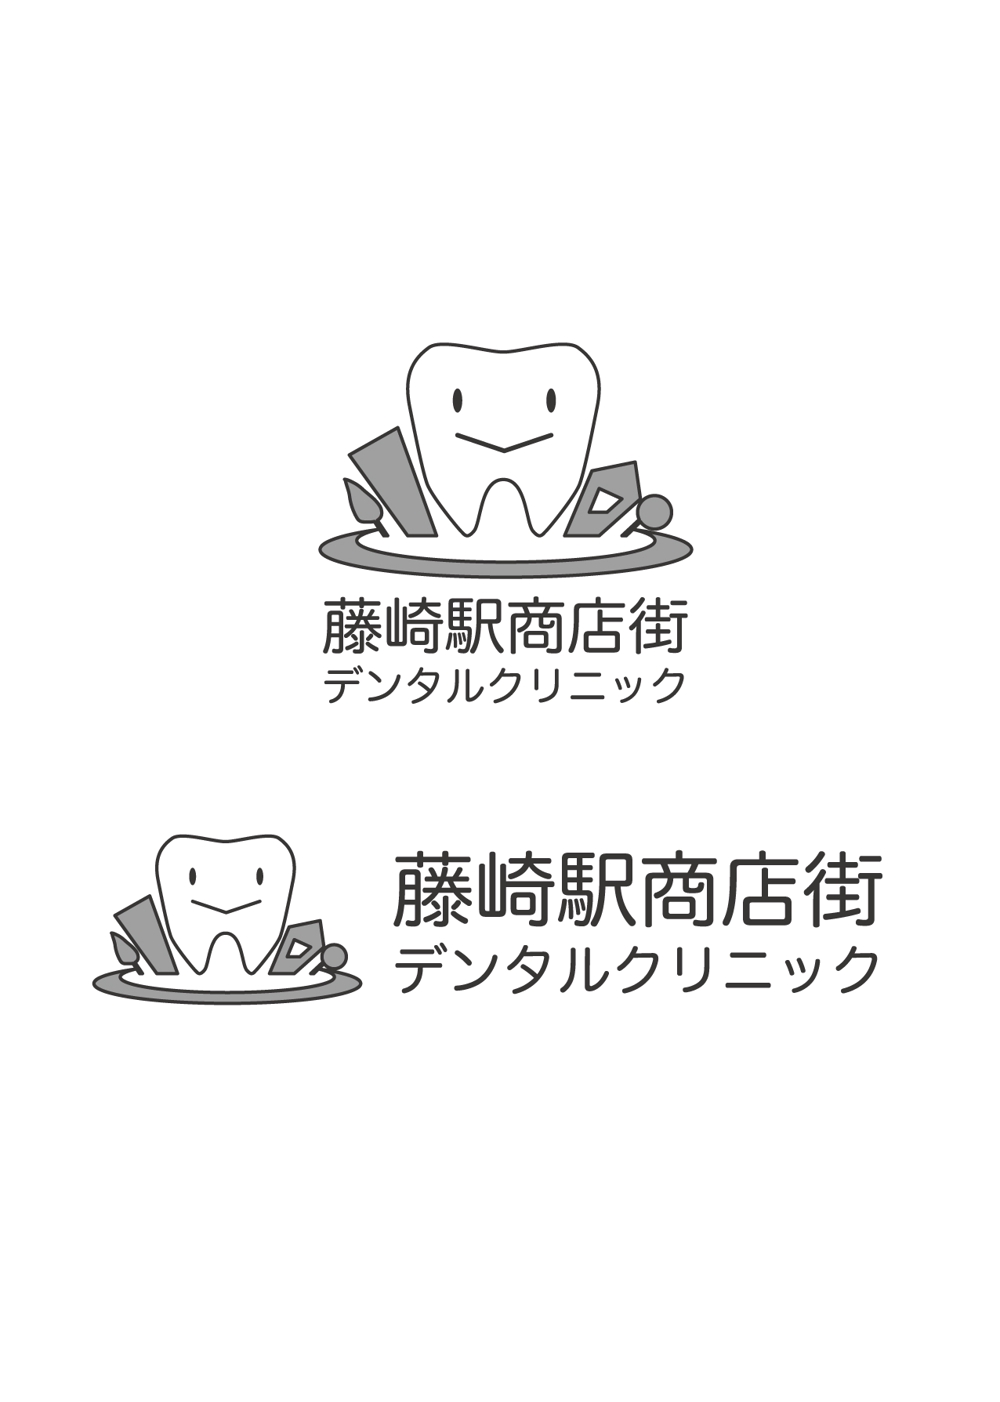 新規歯科医院ロゴ作成